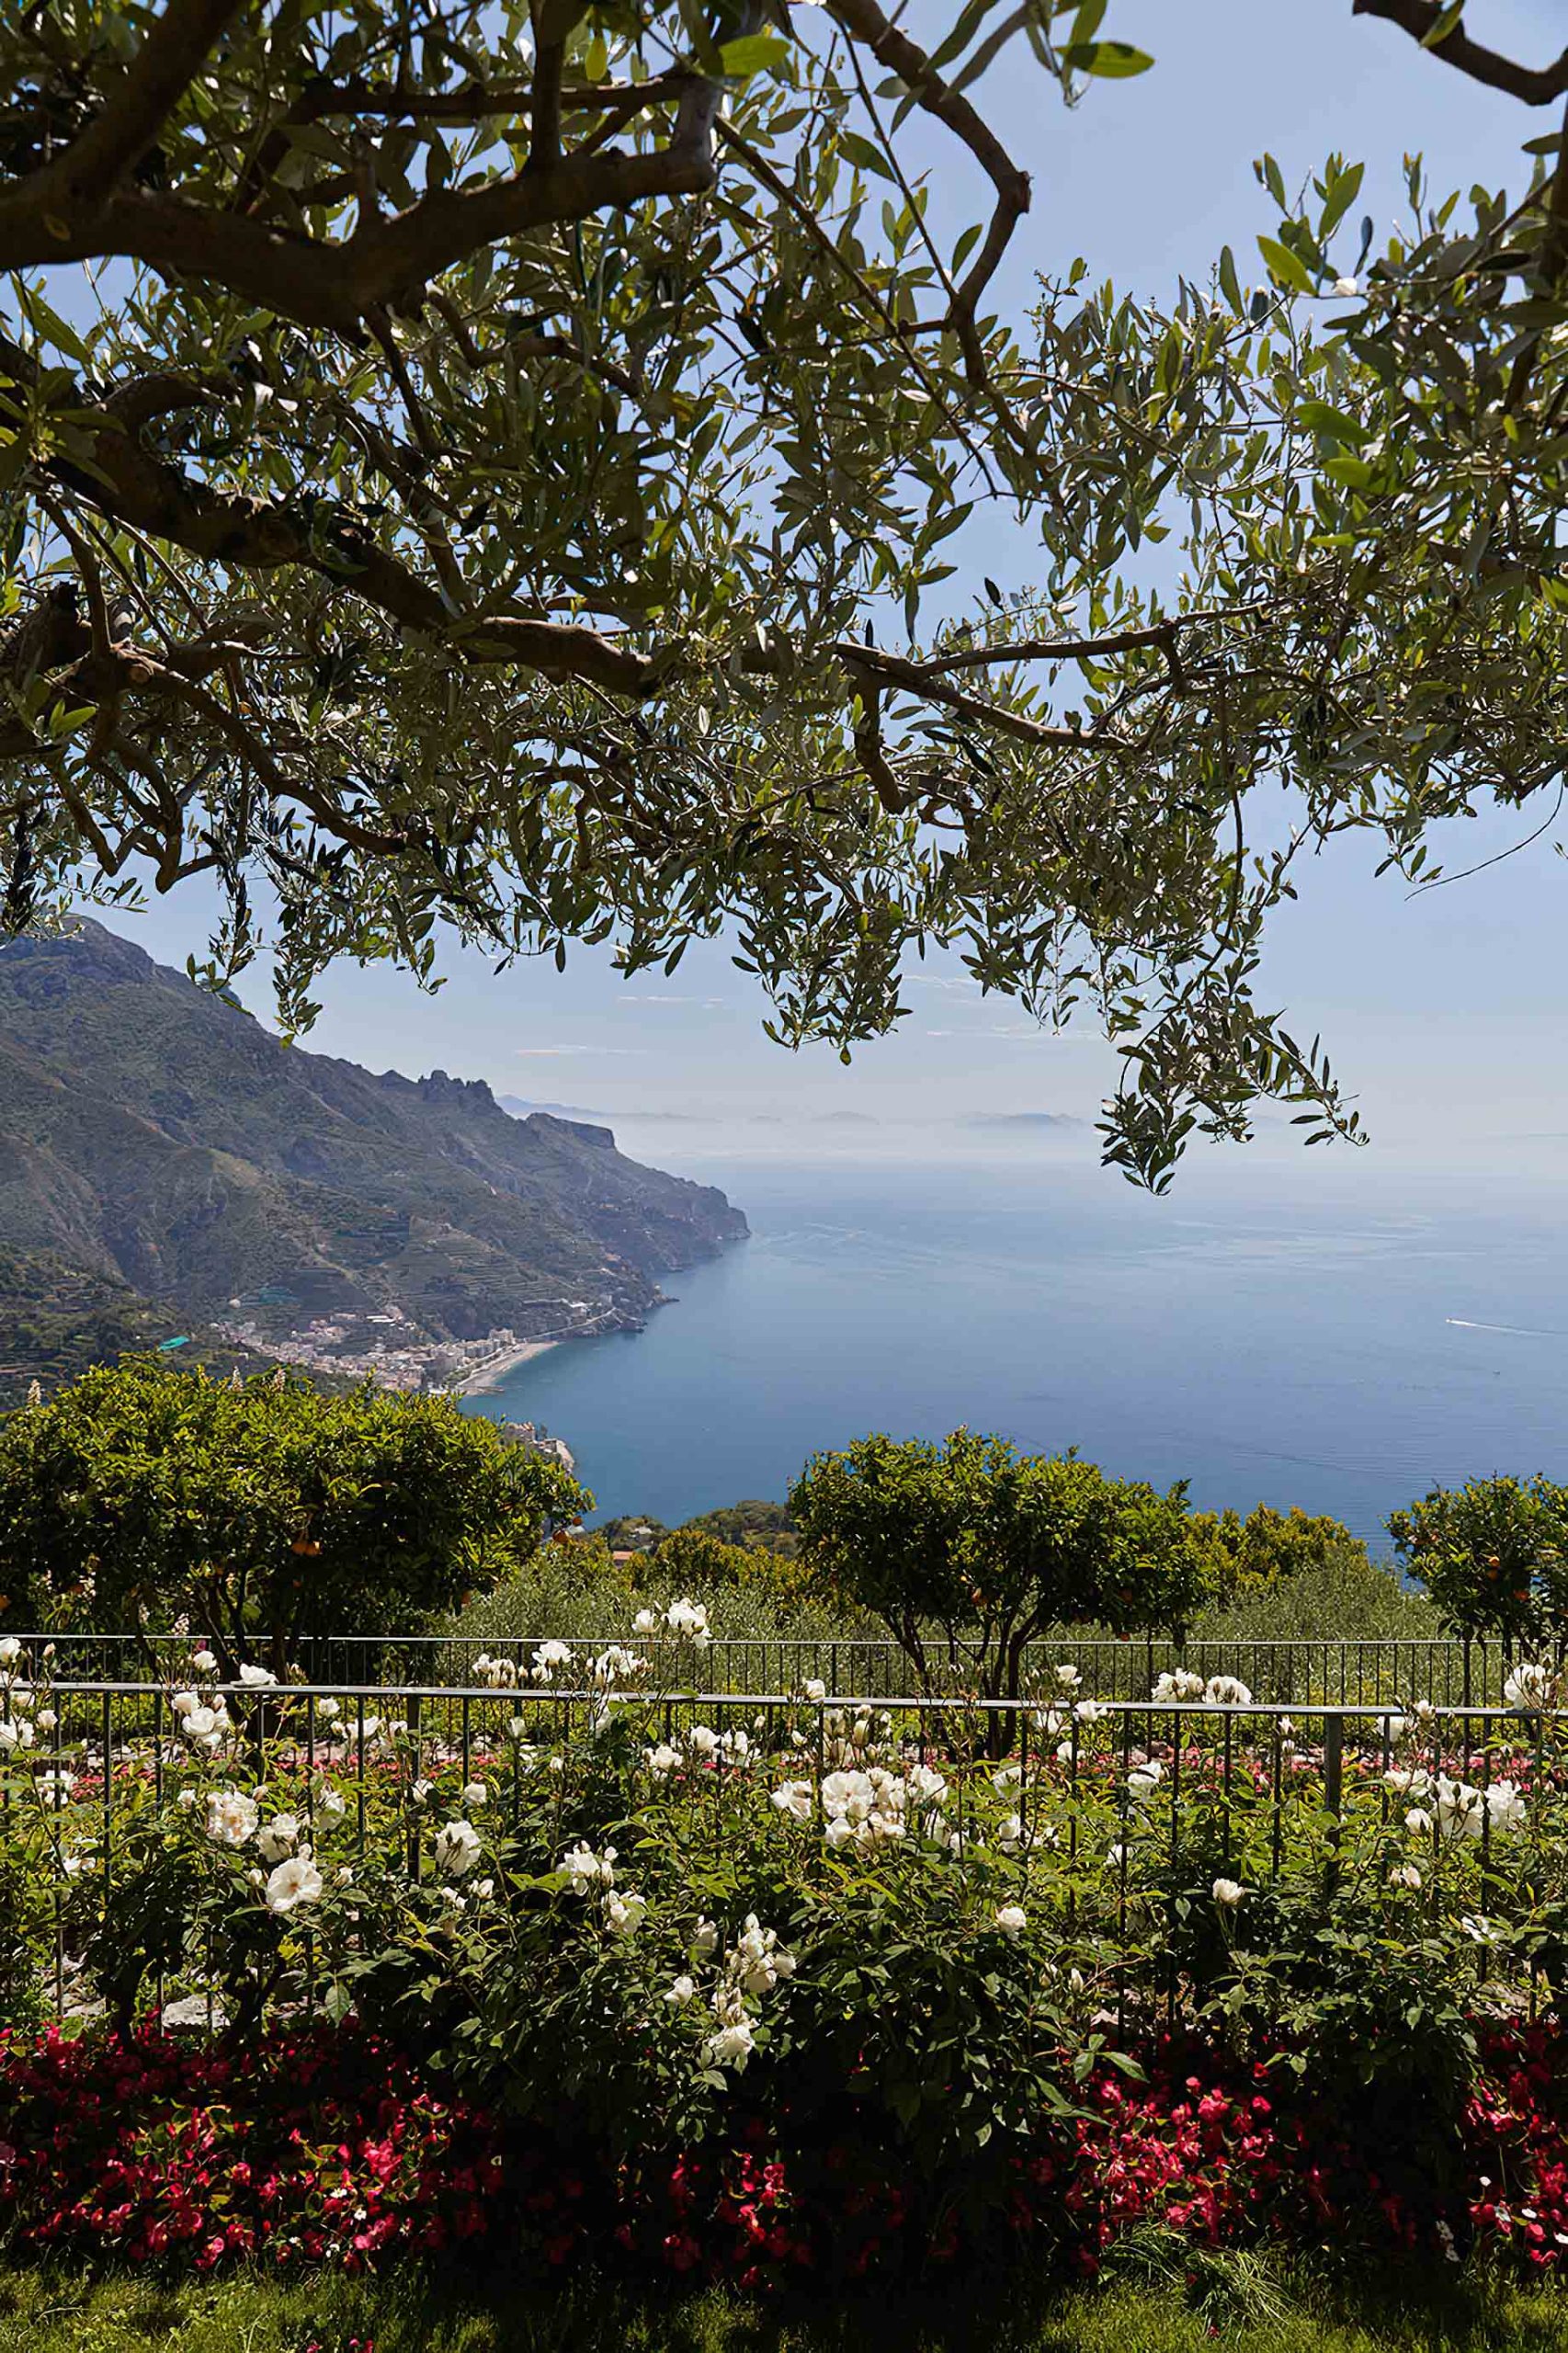 Caruso, A Belmond Hotel, Amalfi Coast - Ravello, Italy - Garden View